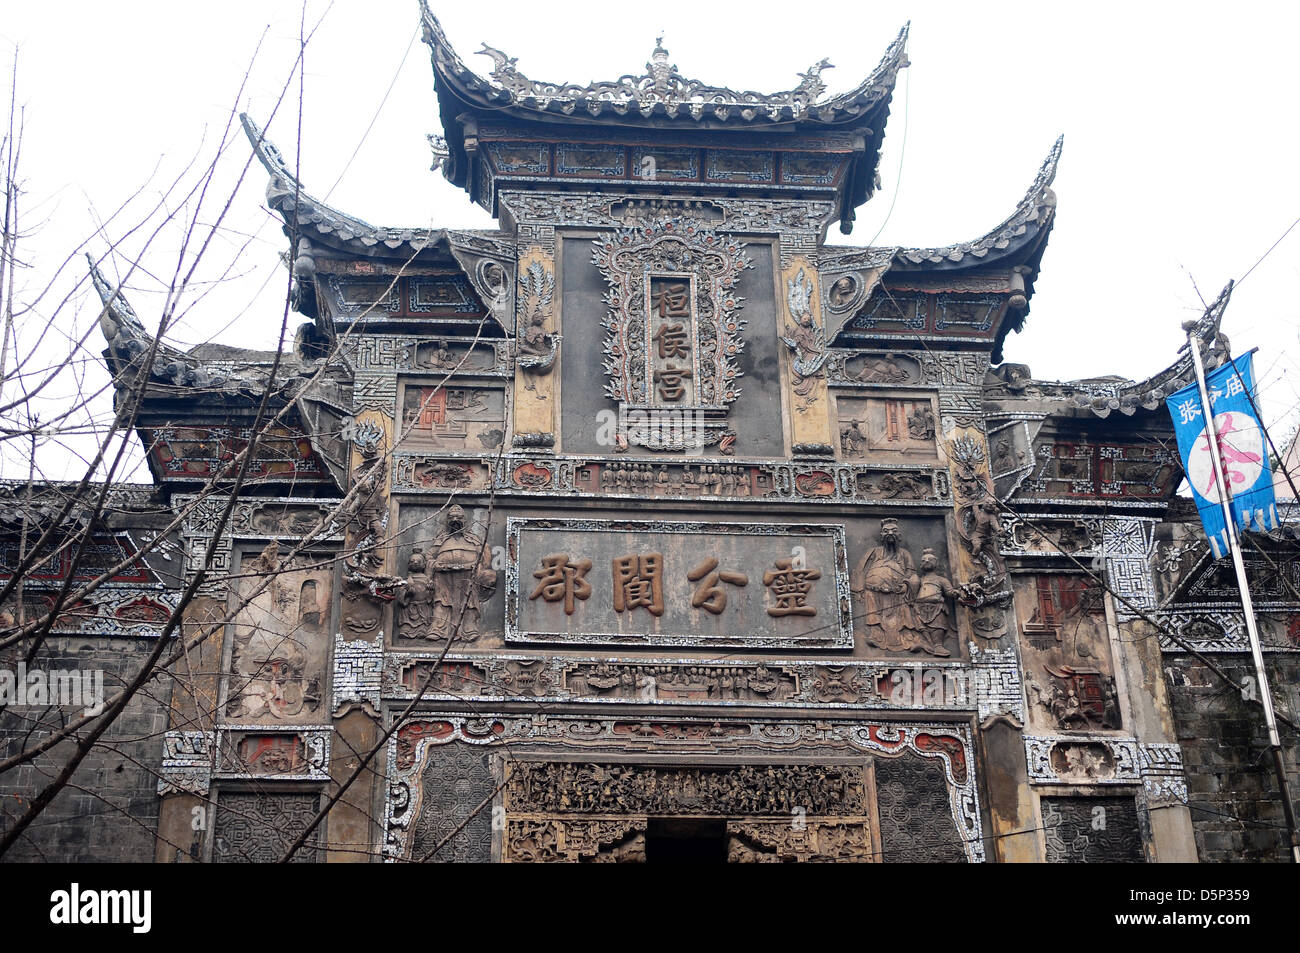 Backsteingebäude Tempel weißen Himmel Hintergrund Architektur religiöse traditionelle buddhistische chinesische China Reliquien Ruinen alter sehen Stockfoto